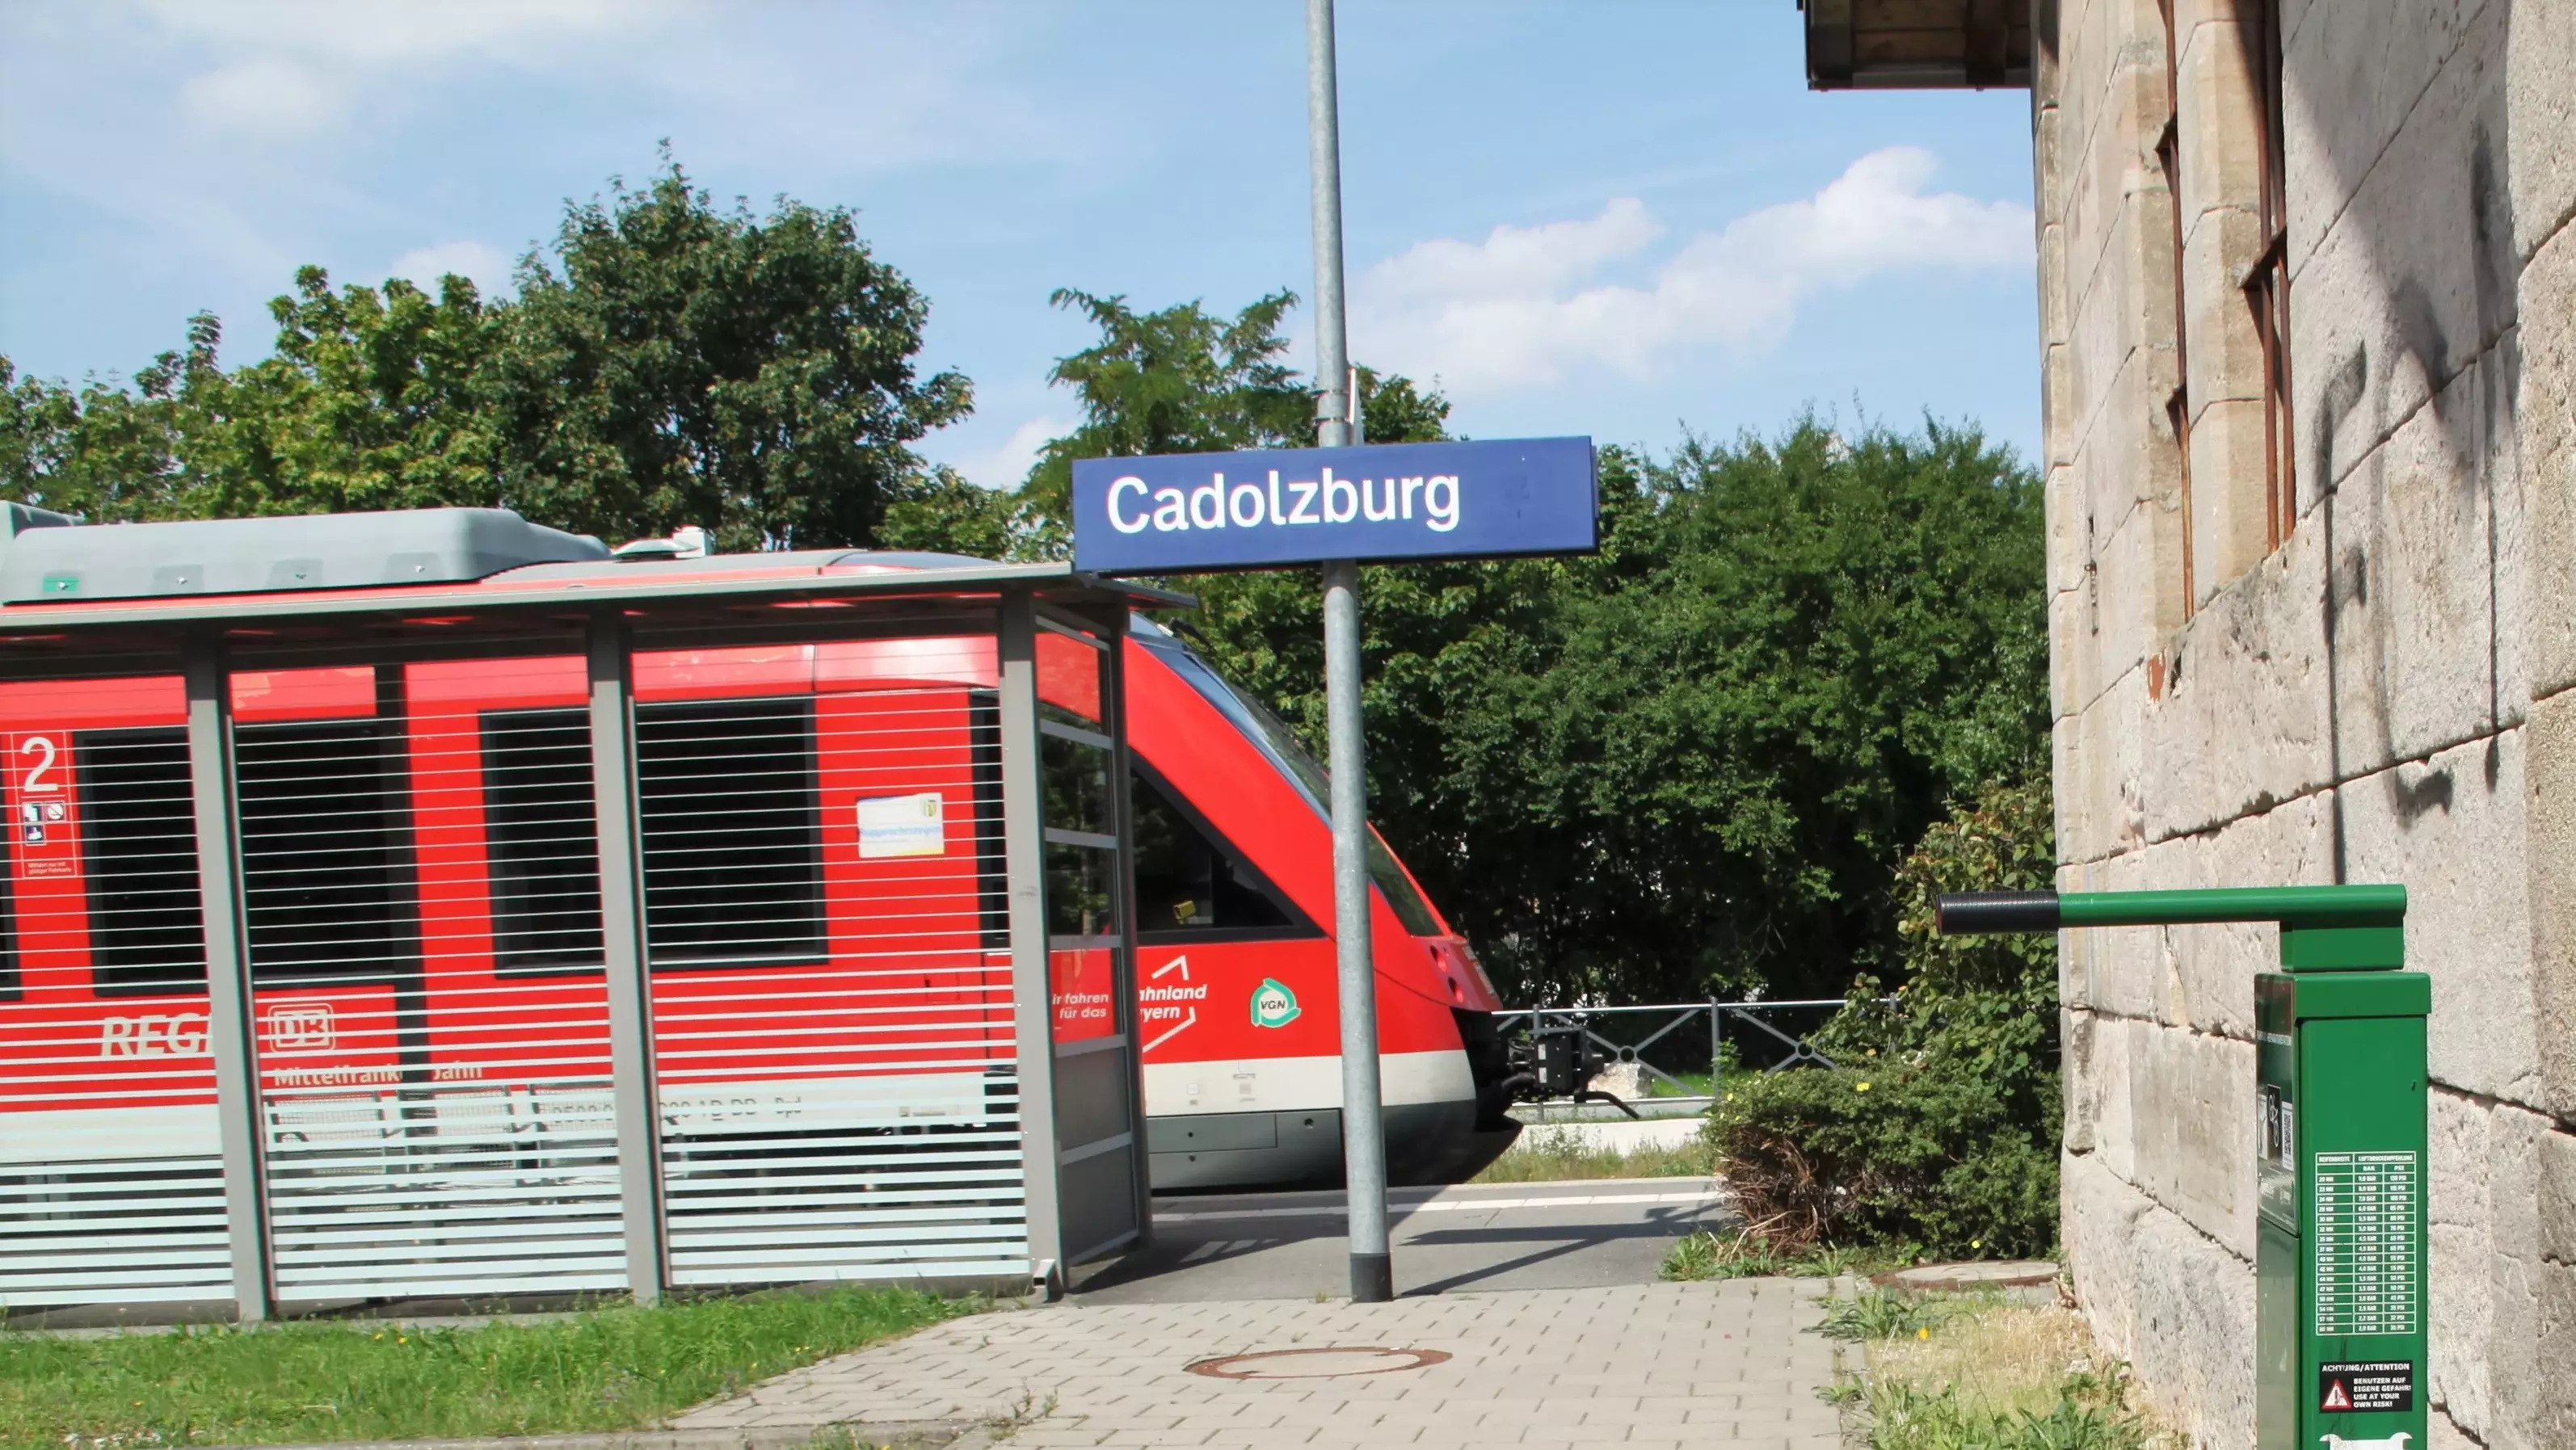 Zug am Bahnhof in Cadolzburg